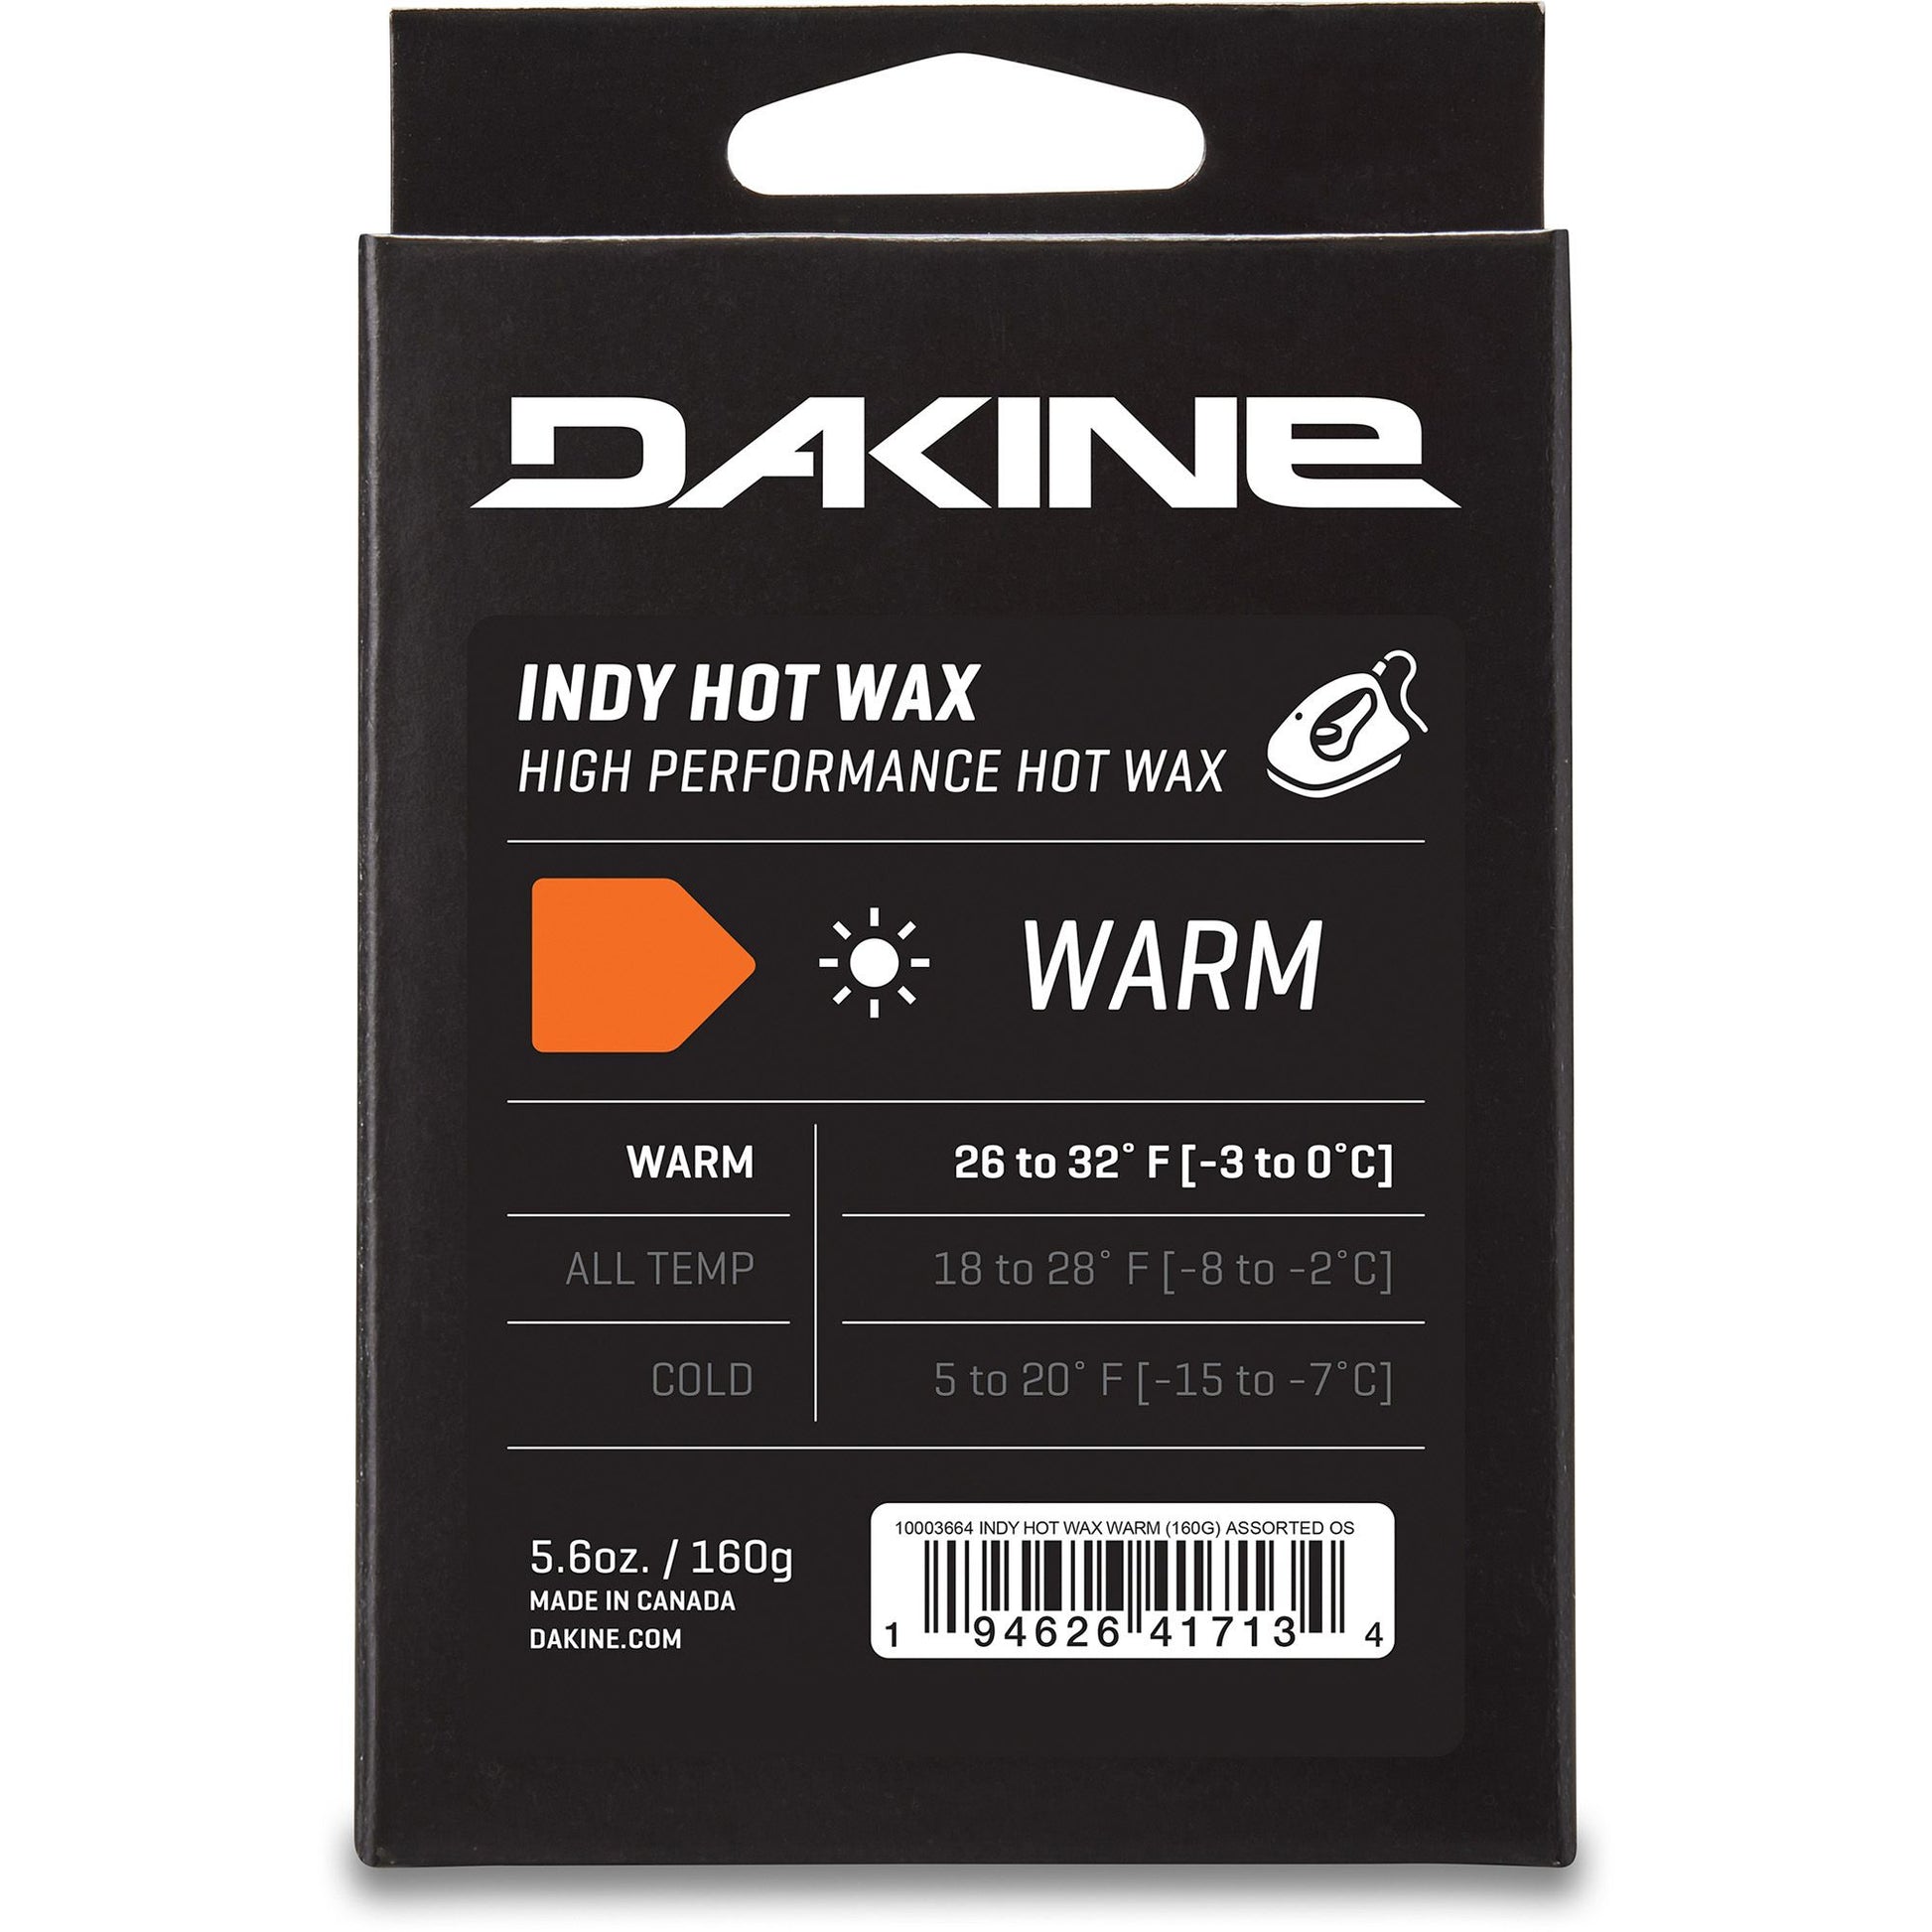 Dakine Indy Hot Wax Warm 160g Multicolor OS Wax